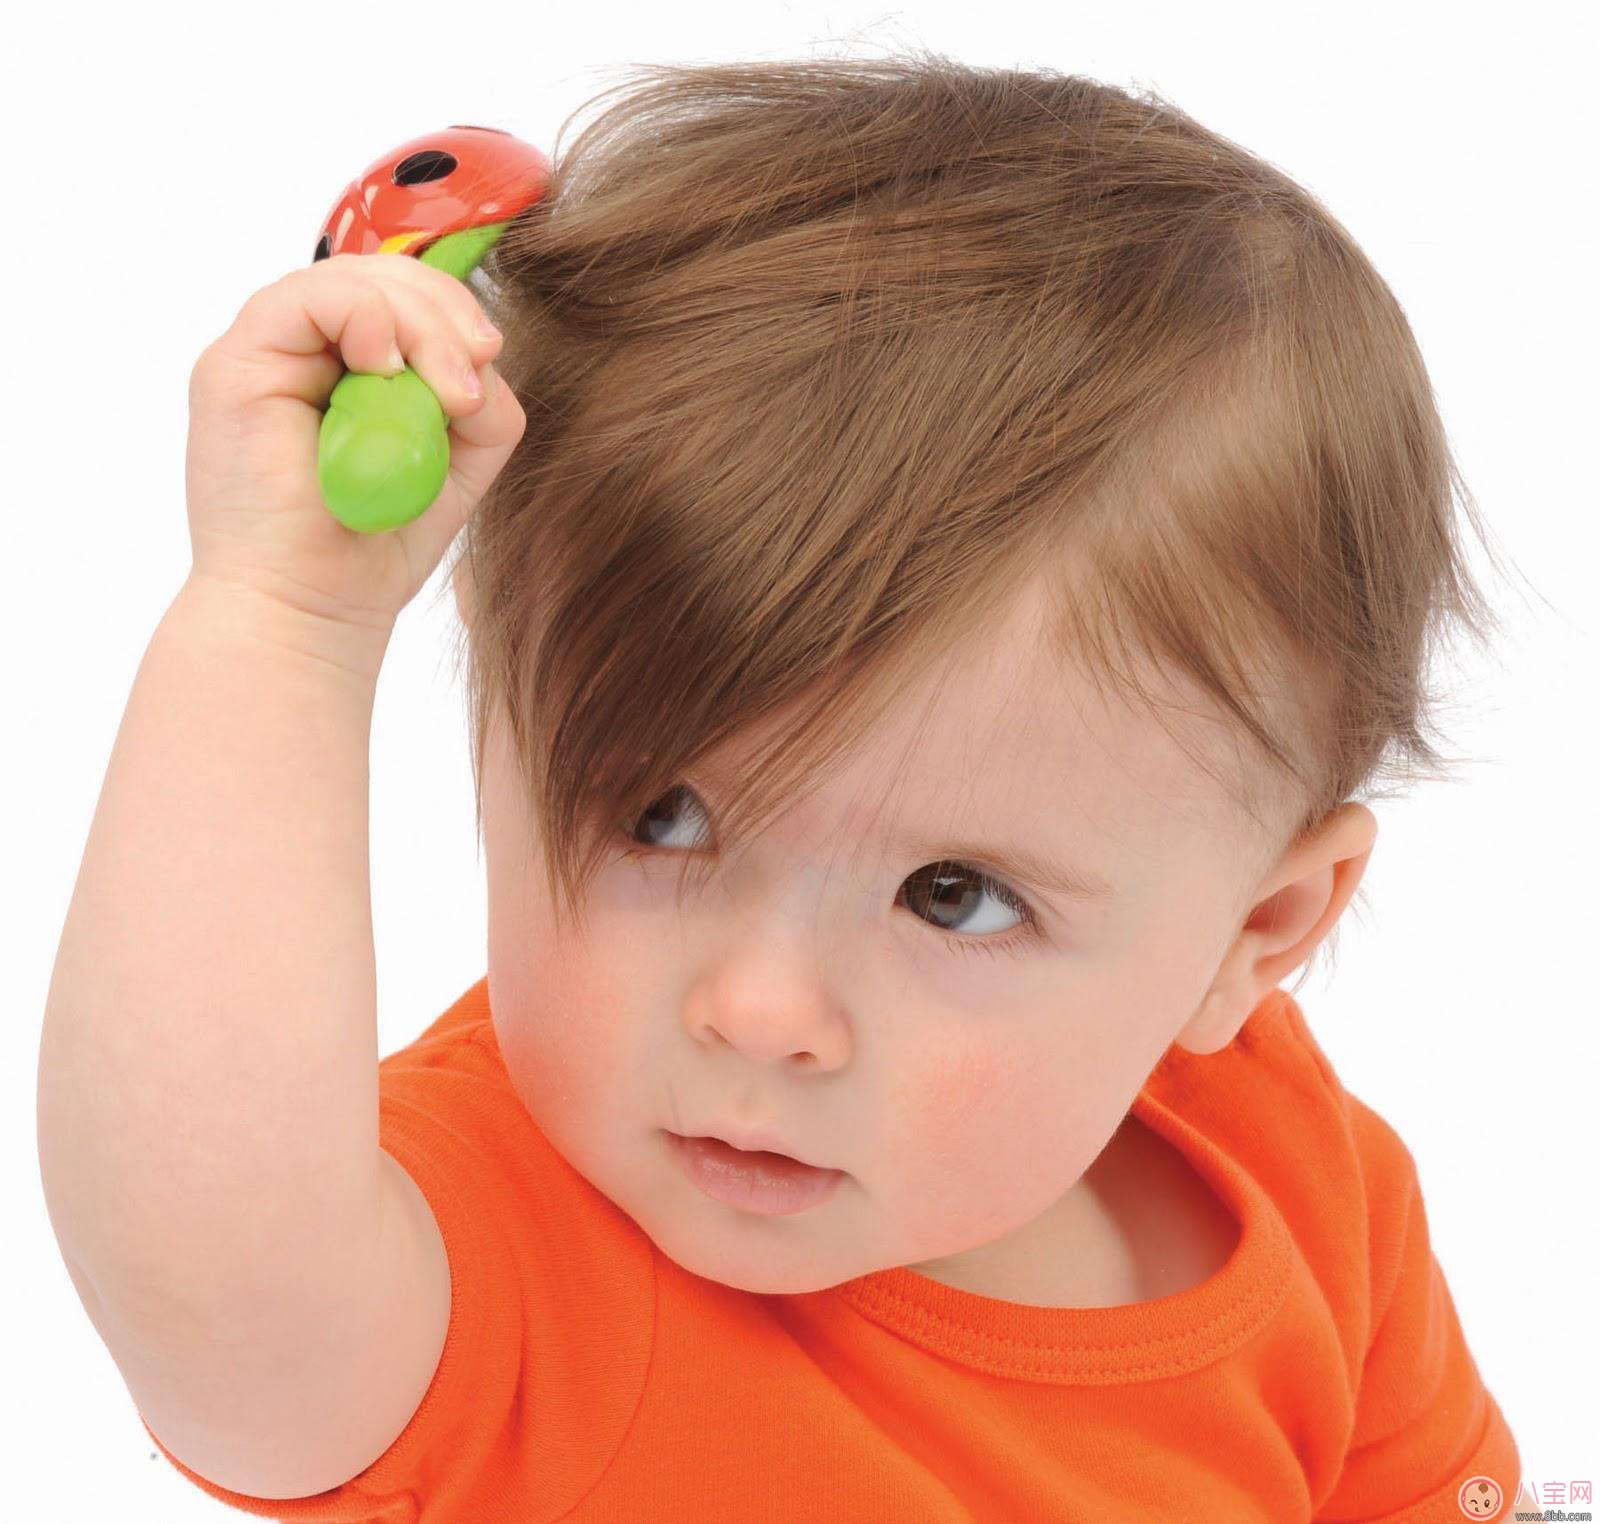 胡杏儿儿子黑发浓密 如何天然护理婴儿头发